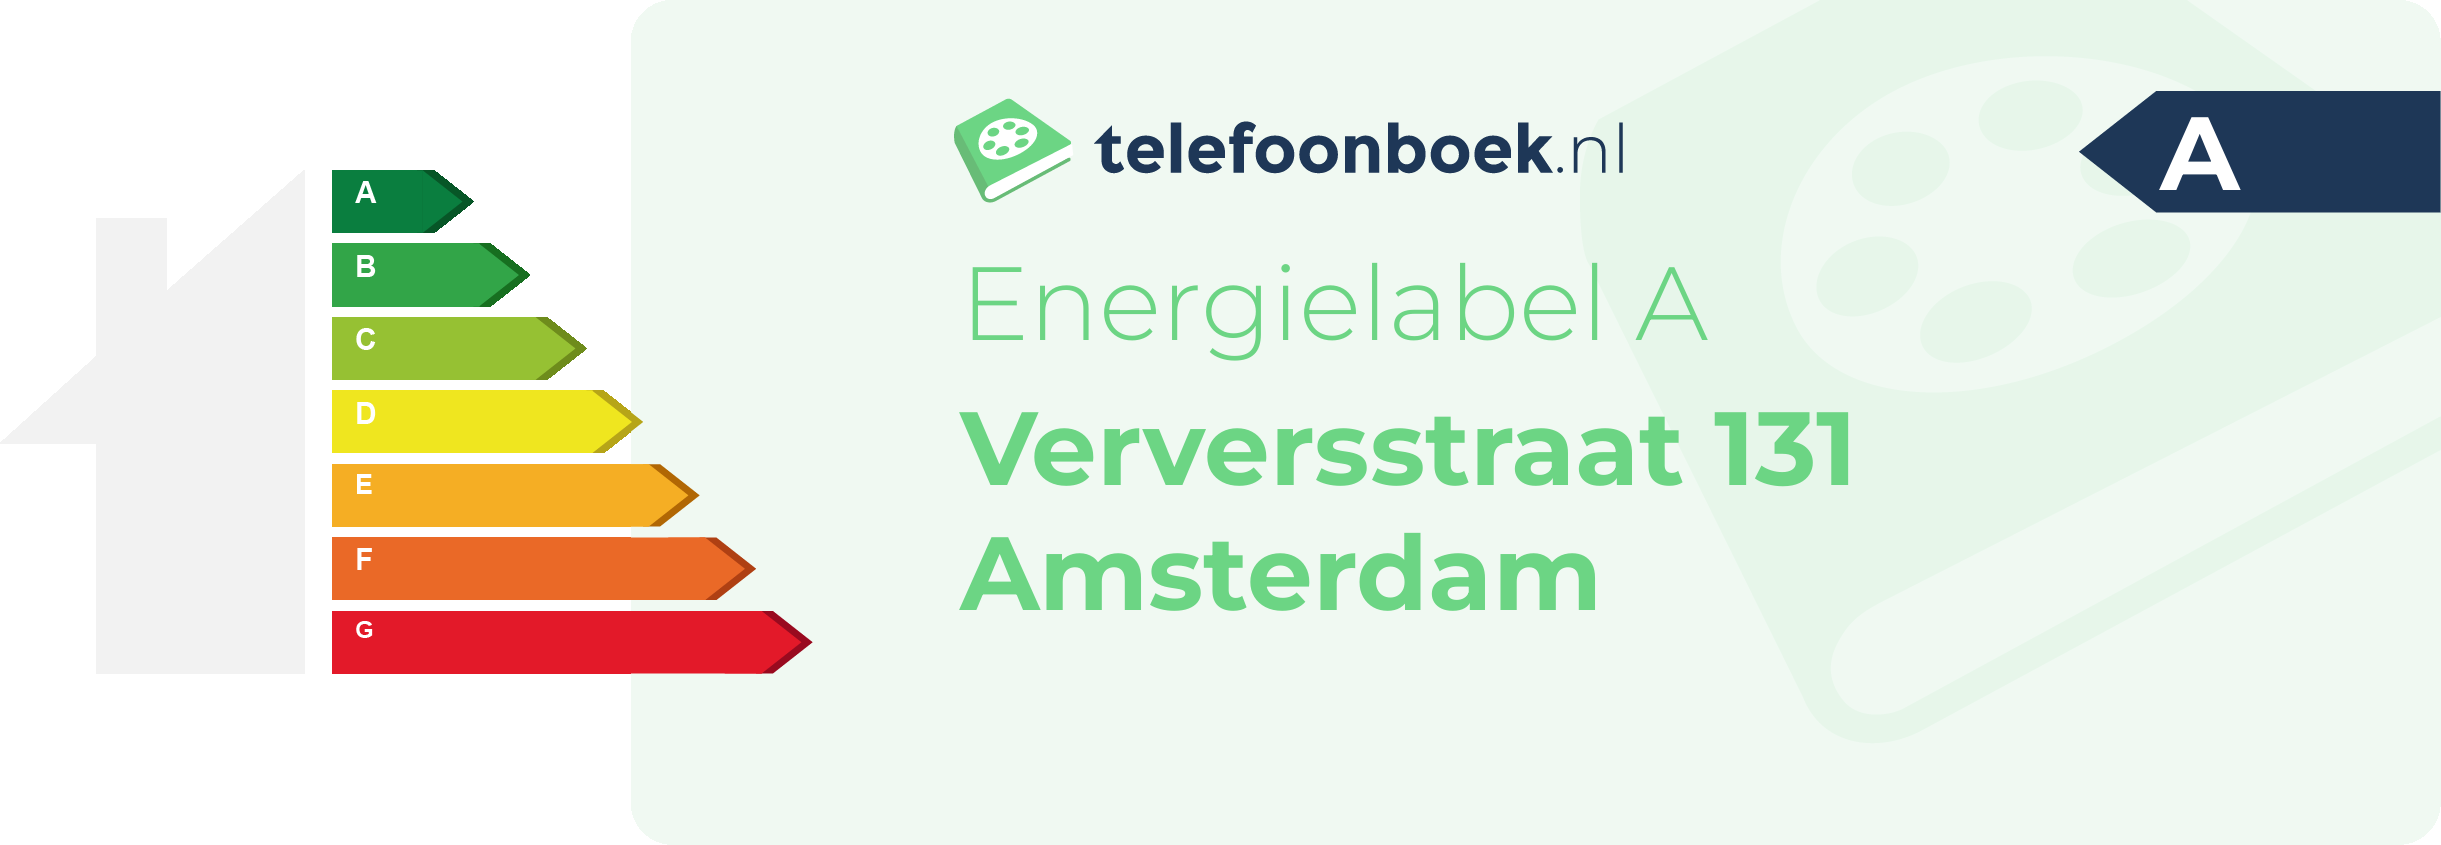 Energielabel Verversstraat 131 Amsterdam